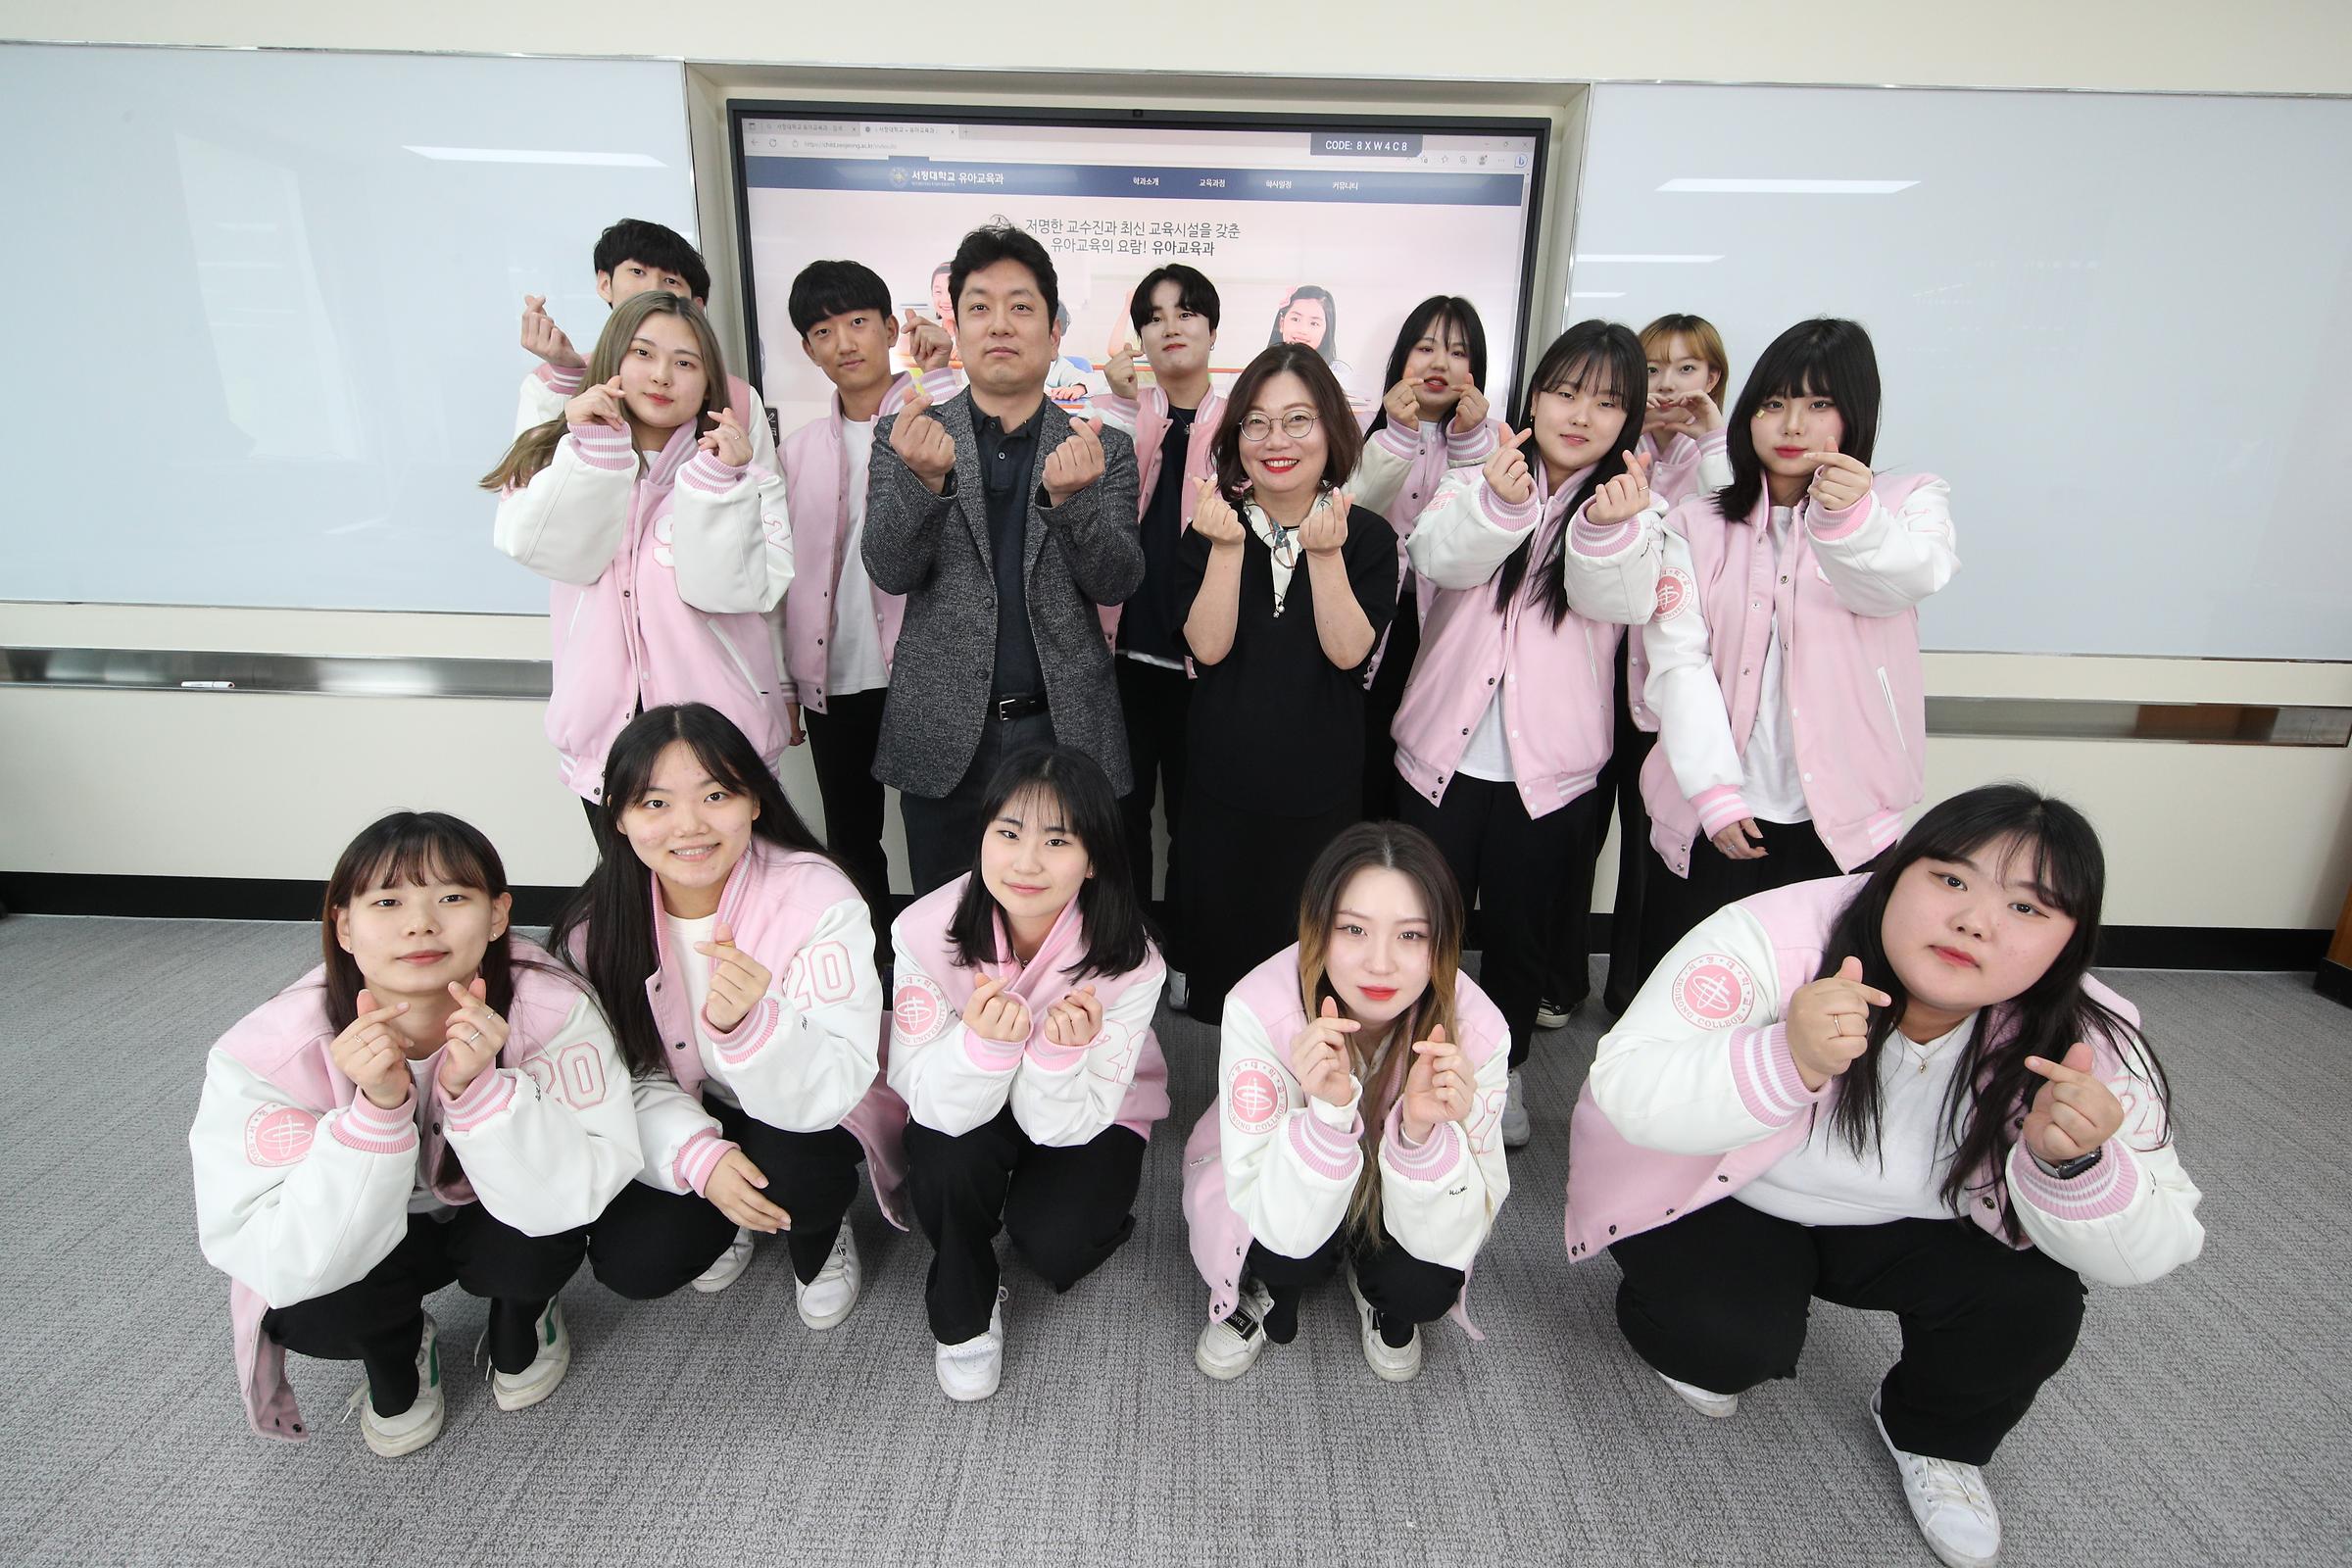 분홍색 과 점퍼를 입고 모여있는 간호학과 학생들과 가운데 서있는 두 명의 교수님들 사진.모두 웃으며 손가락 하트를 만들어 보이고 잇다.